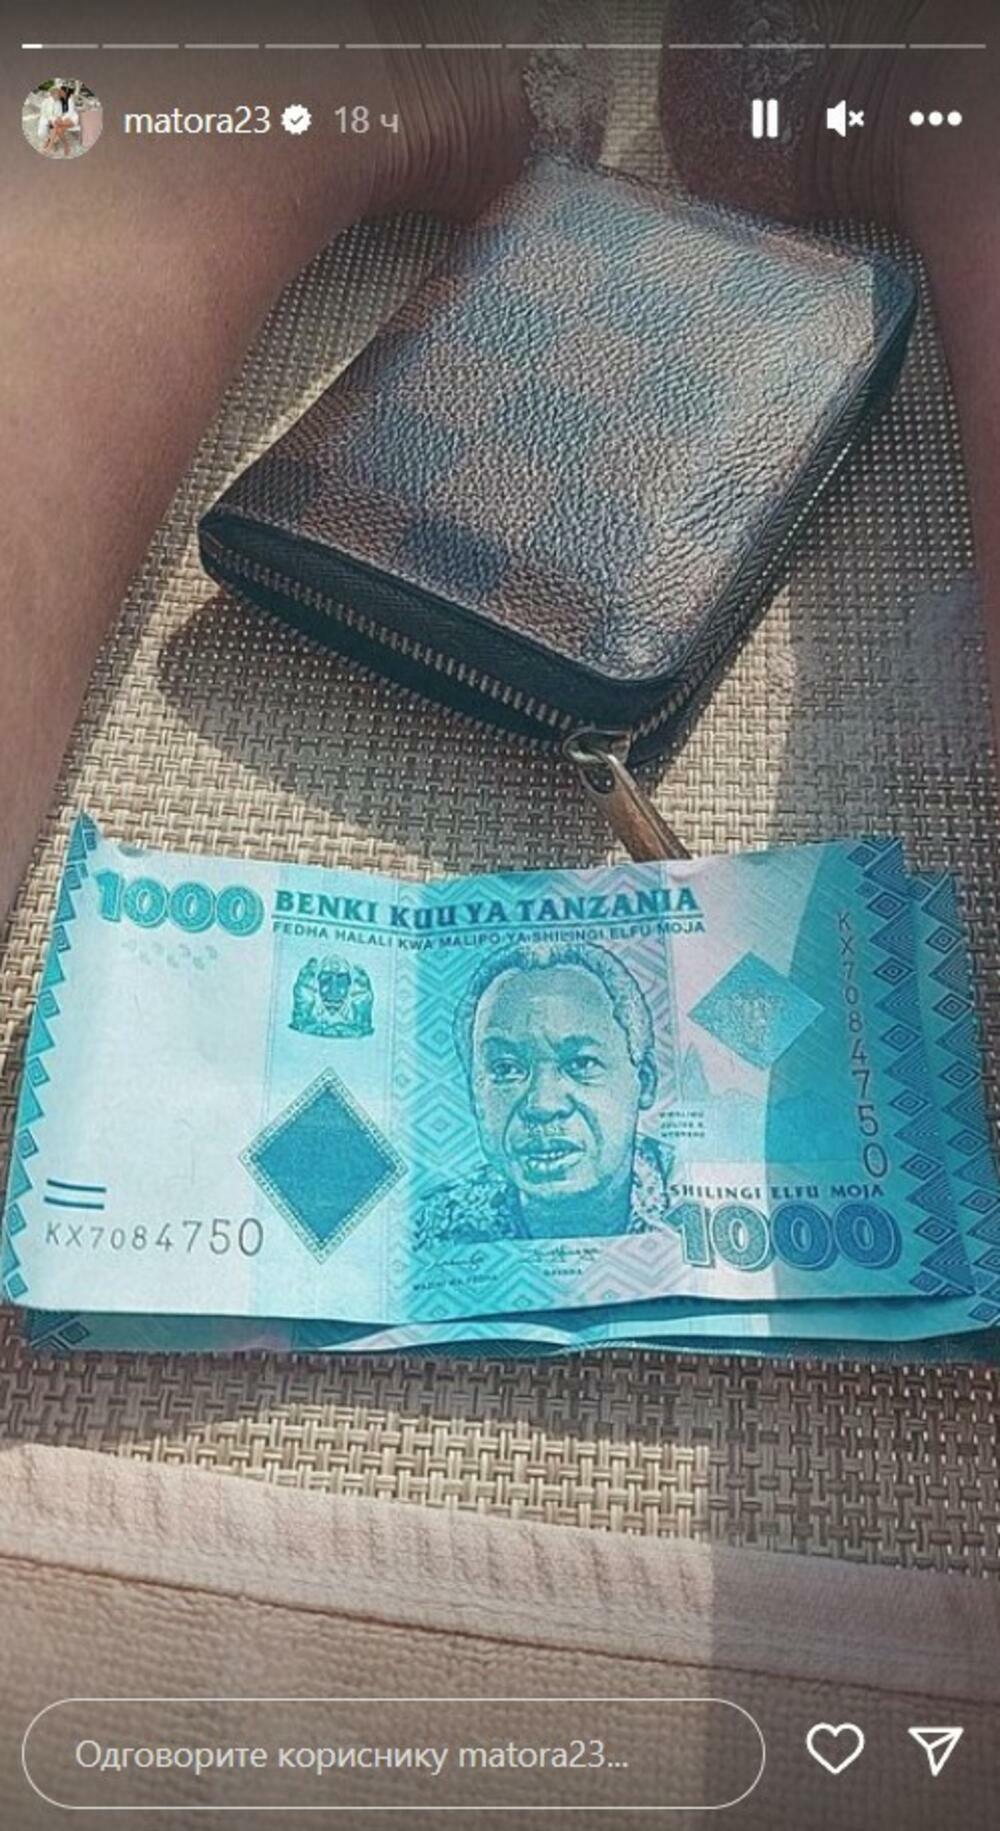 Novčanice sa Zanzibara